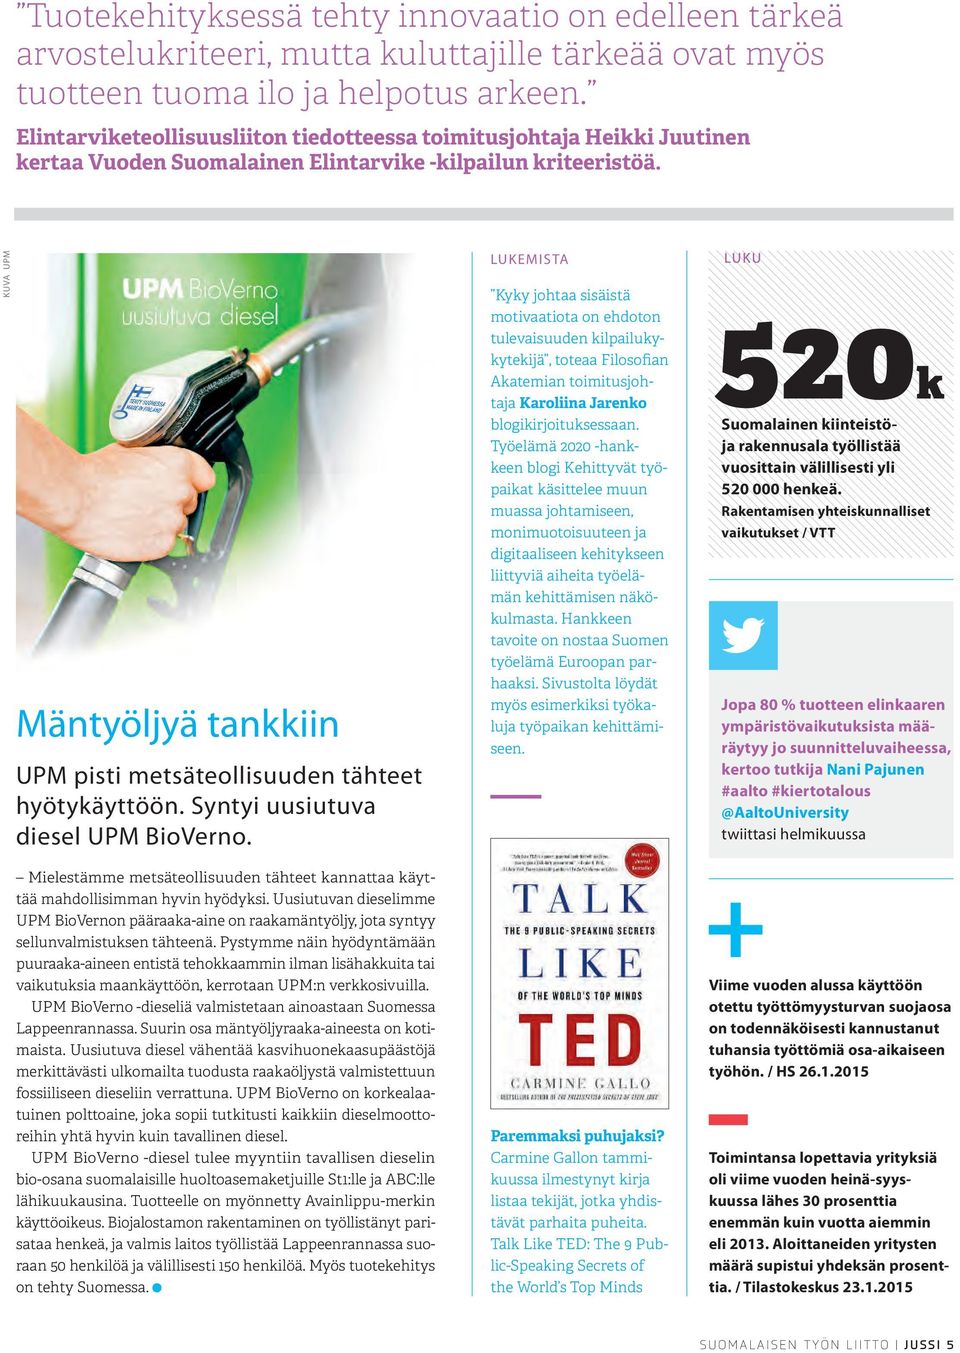 KUVA UPM Mäntyöljyä tankkiin UPM pisti metsäteollisuuden tähteet hyötykäyttöön. Syntyi uusiutuva diesel UPM BioVerno.